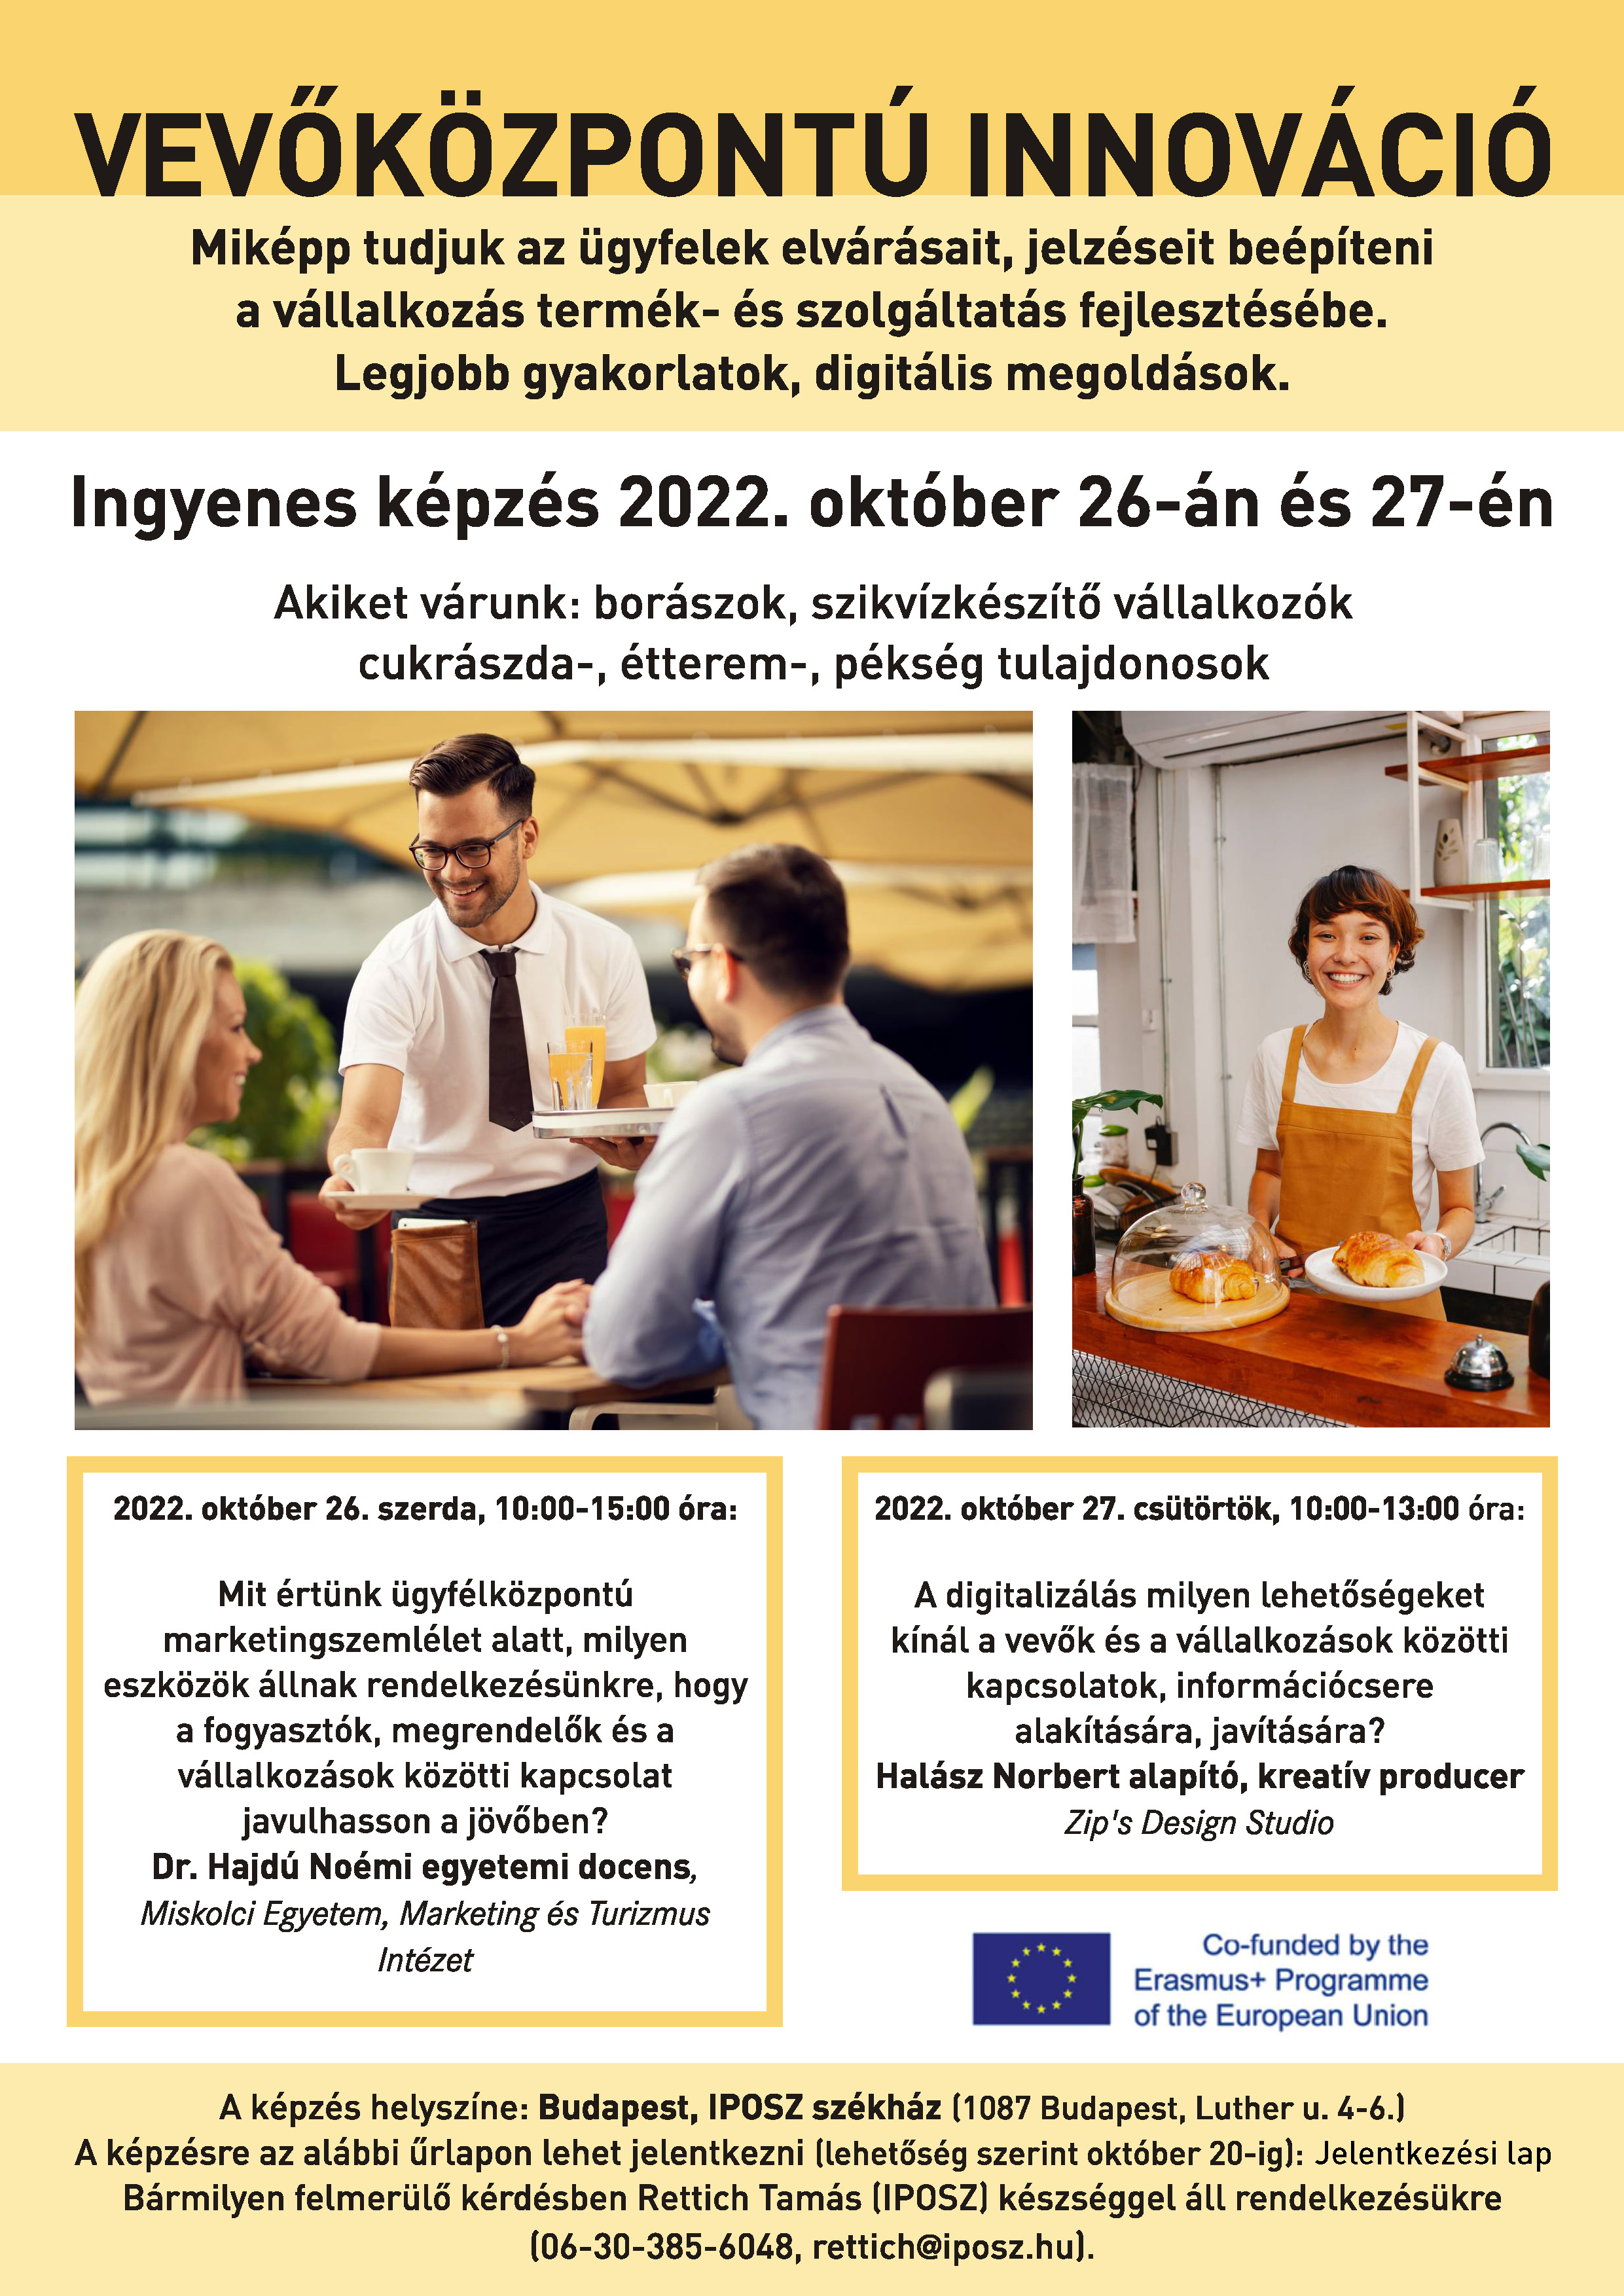 Vevőközpontú innováció képzés  október 26-27-én, az IPOSZ-ban